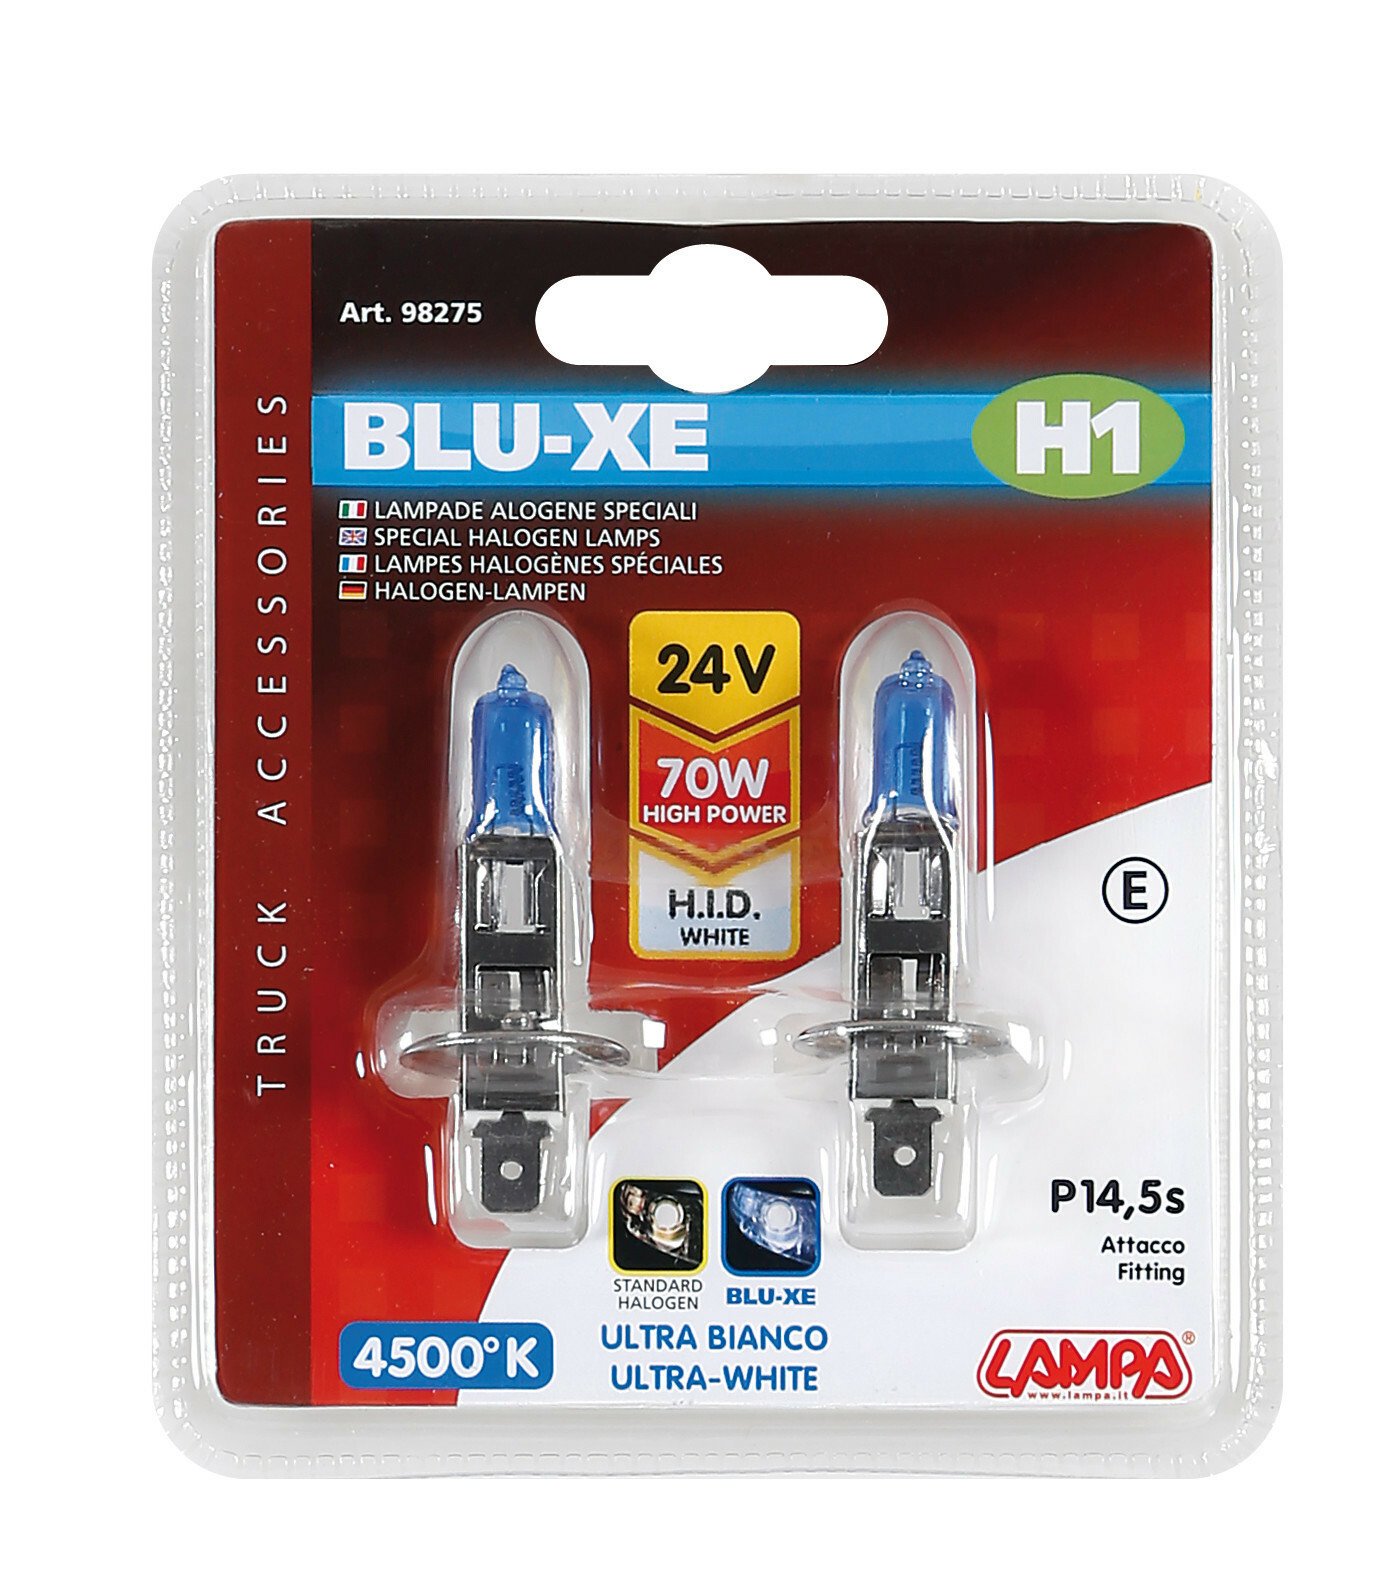 24V Blu-Xe halogen lamp - H1 - 70W - P14,5s - 2 pcs thumb